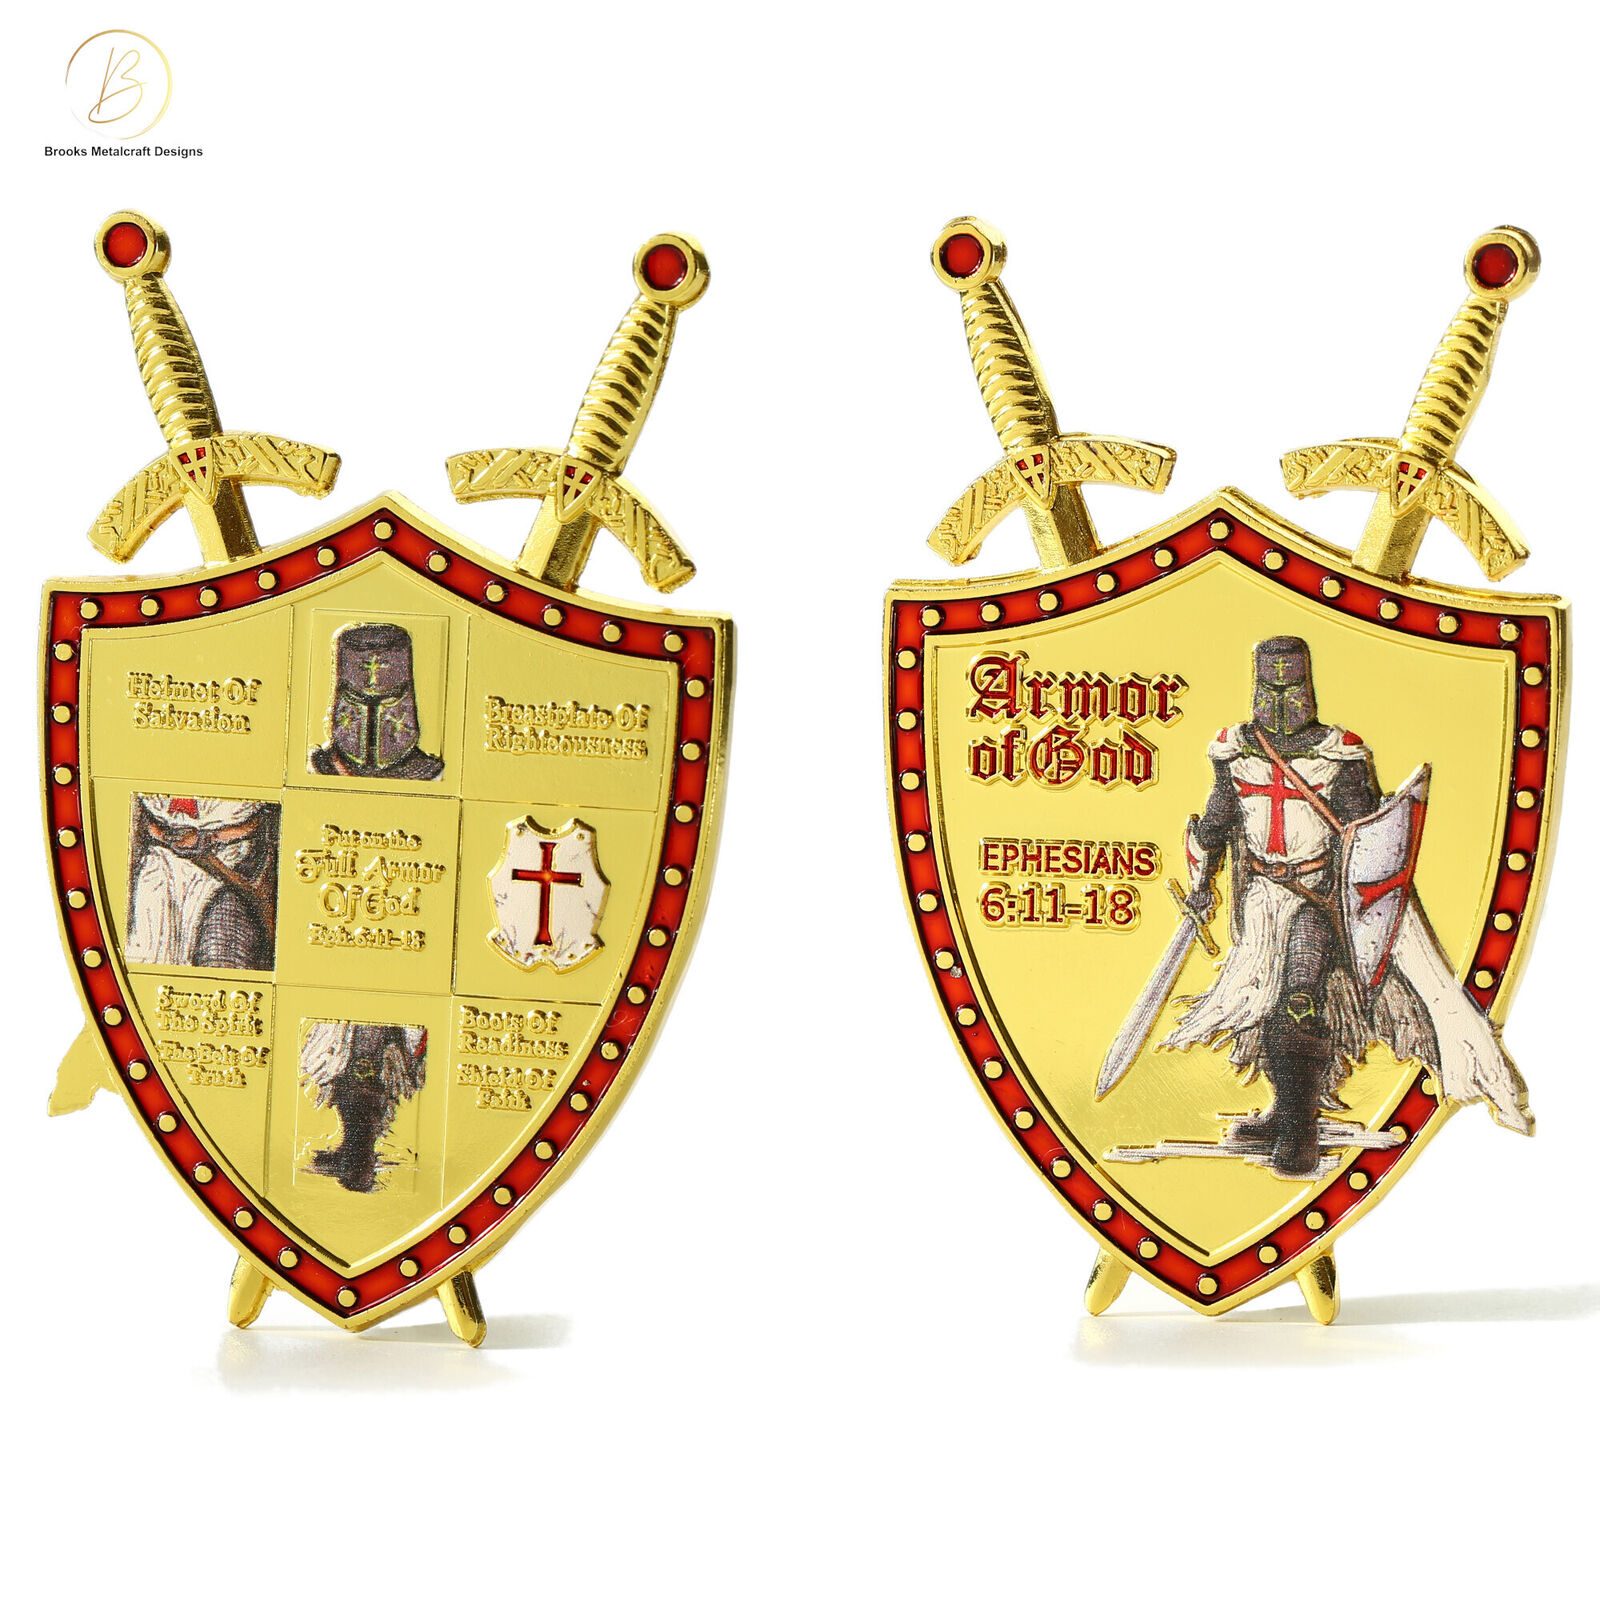 3D Knights Templar Gold Armor of God Eph. 6:11-18 Christian Coin